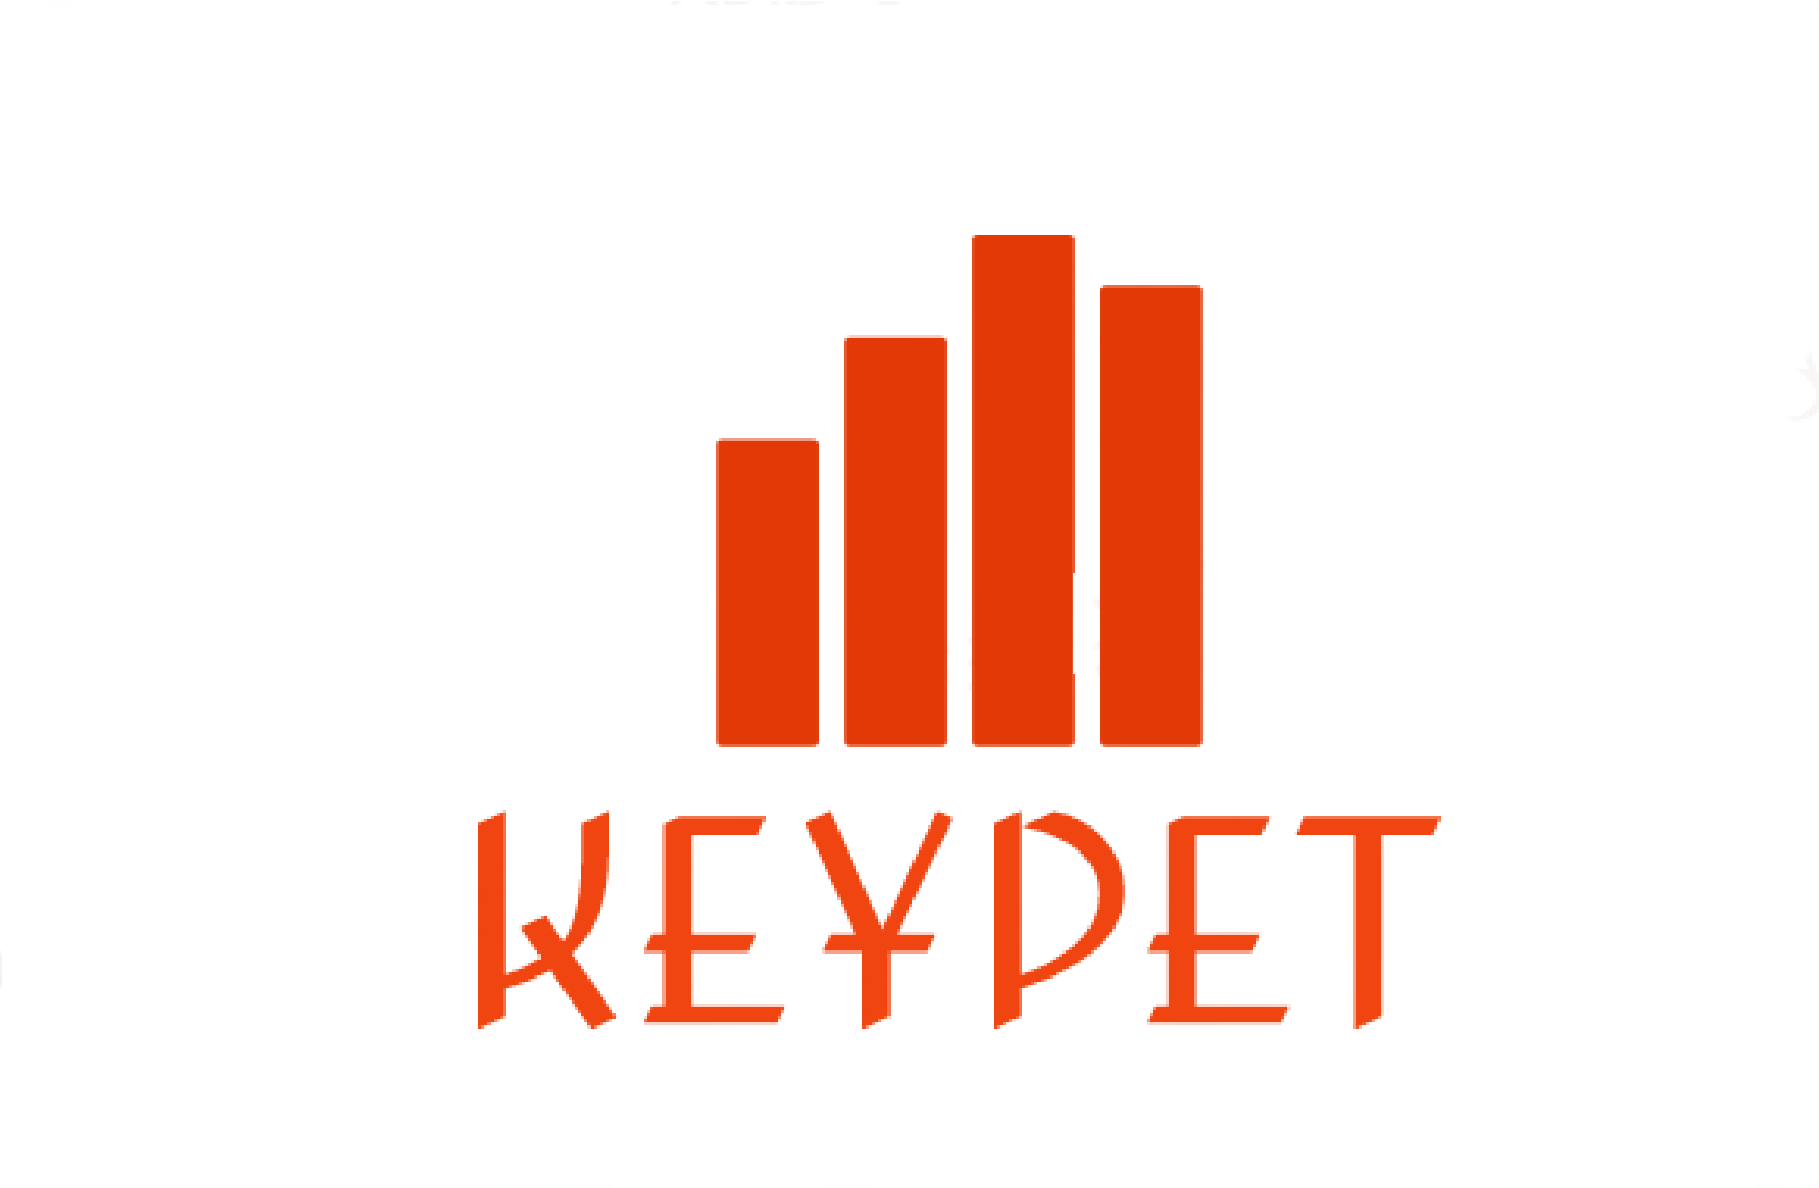 Keypetbooks Limited